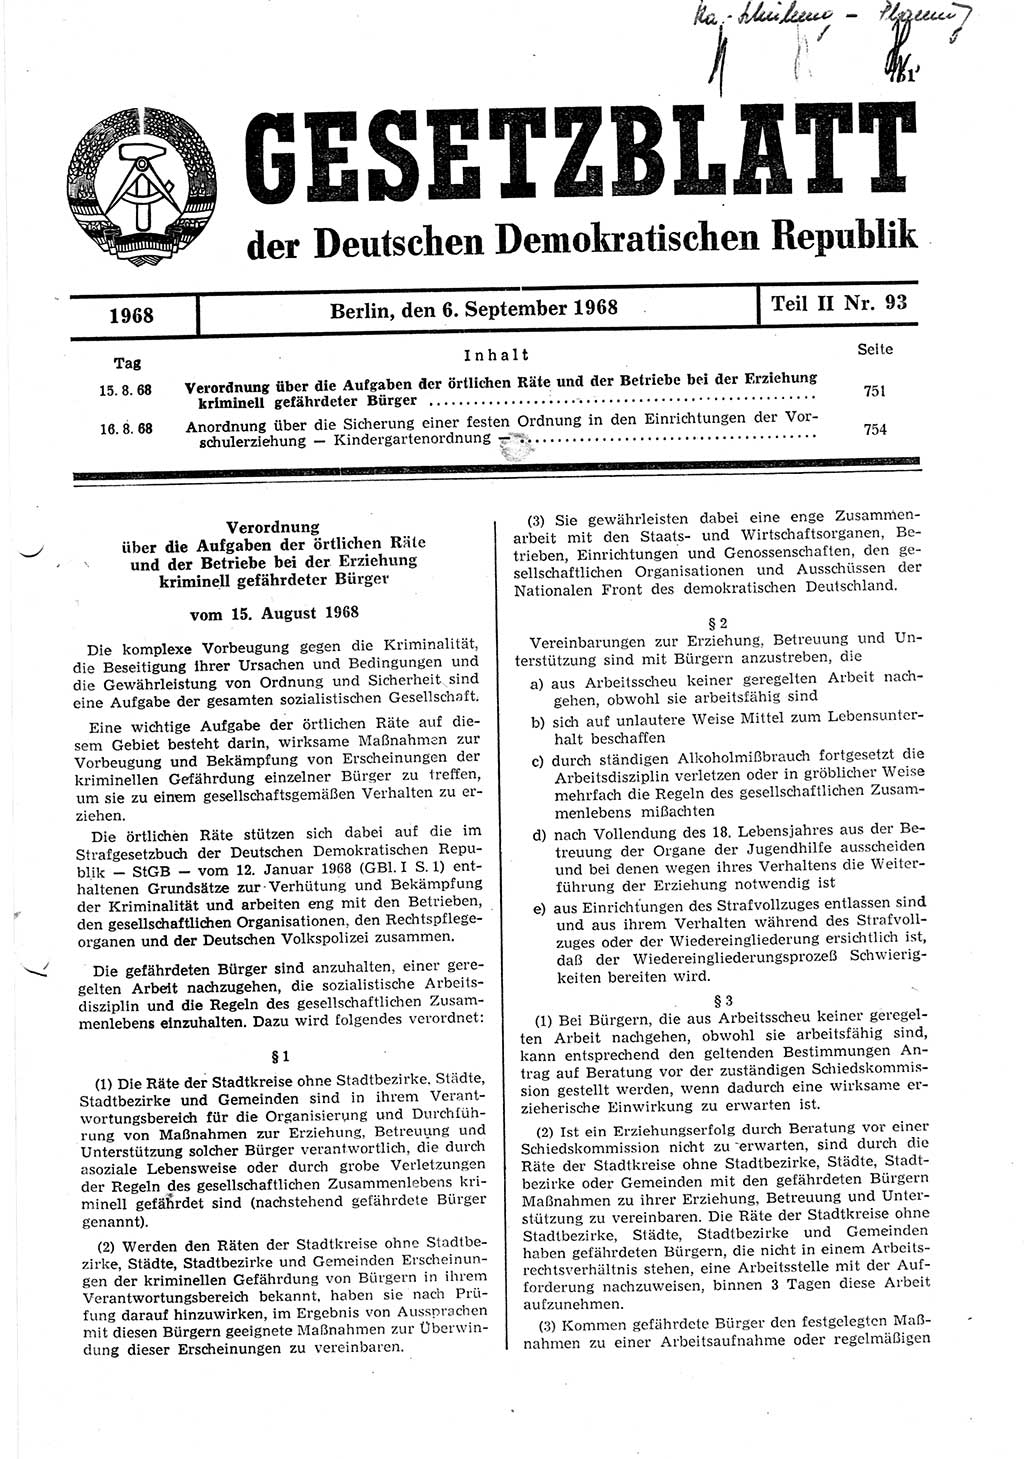 Gesetzblatt (GBl.) der Deutschen Demokratischen Republik (DDR) Teil ⅠⅠ 1968, Seite 751 (GBl. DDR ⅠⅠ 1968, S. 751)